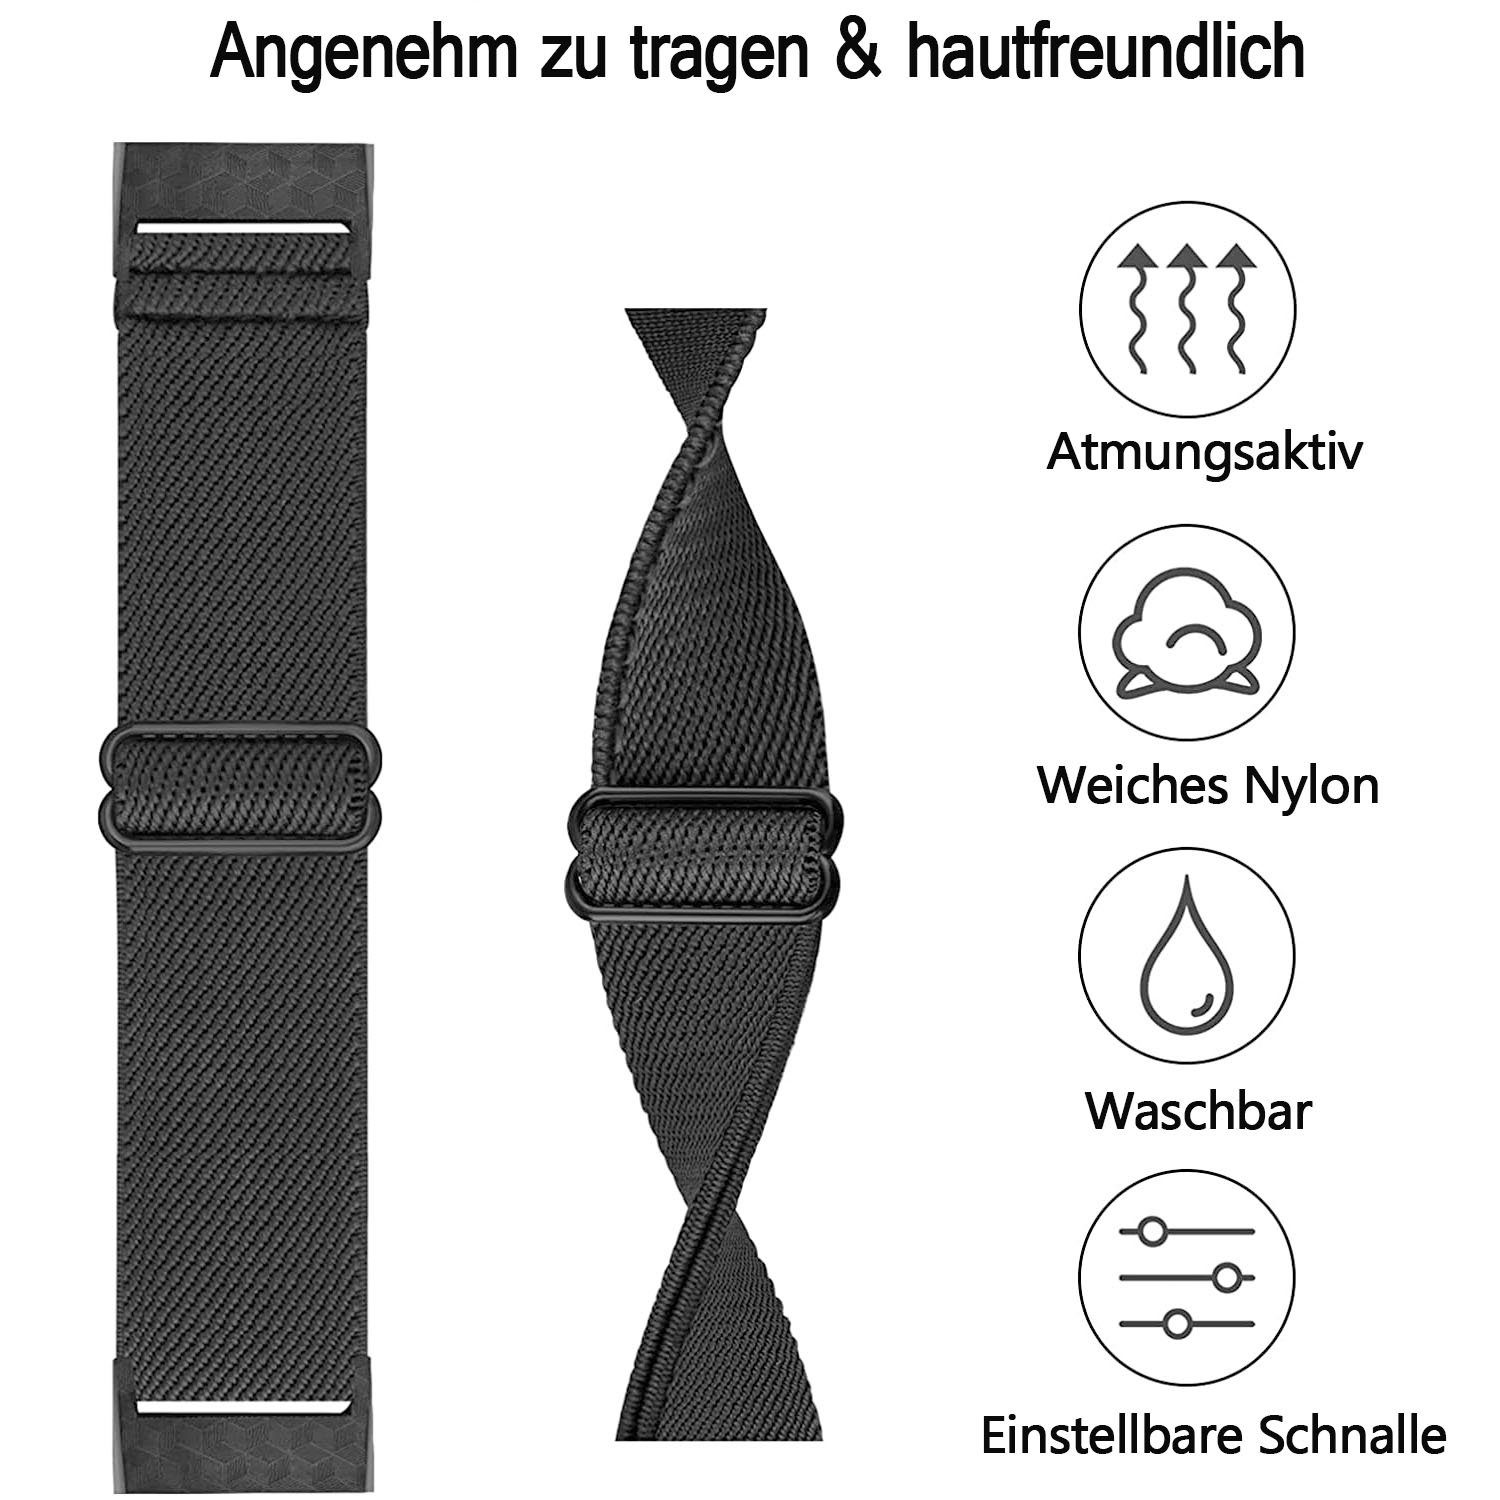 zggzerg 2 Fitbit Kompatibel für Uhrenarmband Stück Charge Armband Schwarz+Leopard Elastische